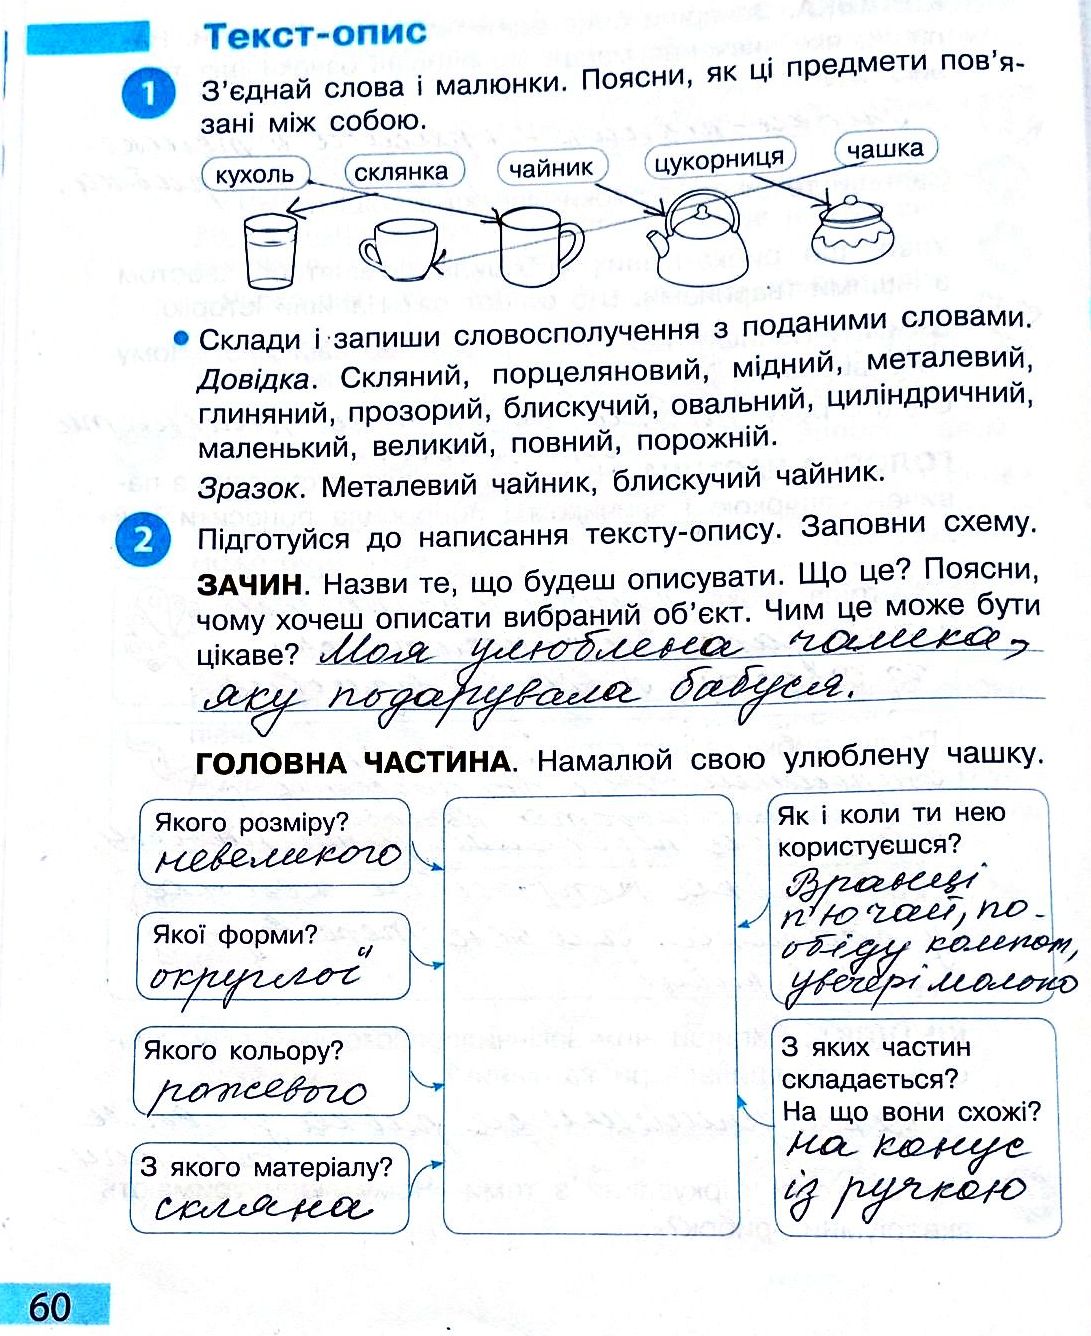 Сторінка 60 частина 2 гдз 3 клас робочий зошит українська мова Большакова